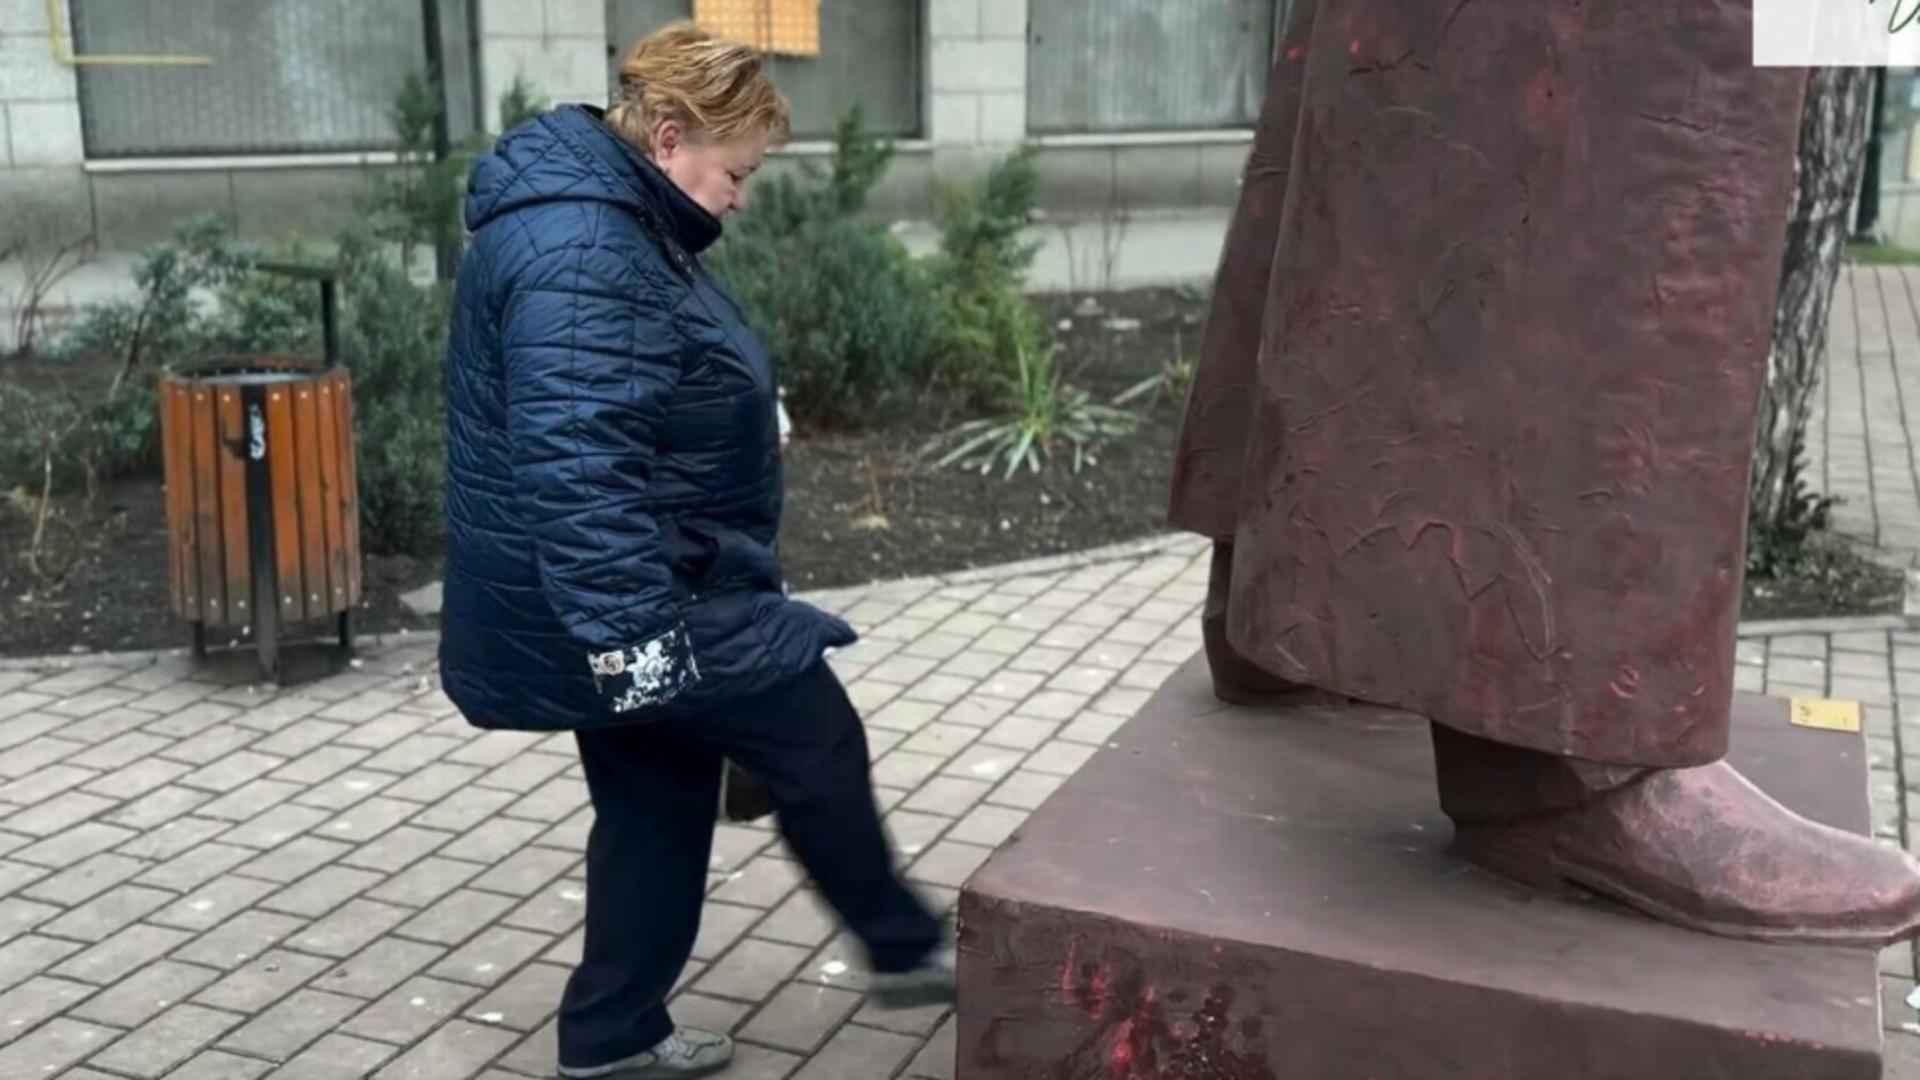 Femeia care a lovit statuia din Iași s-a ales cu dosar penal. Ce zice sculptorul despre reacția pensionarei revoltate